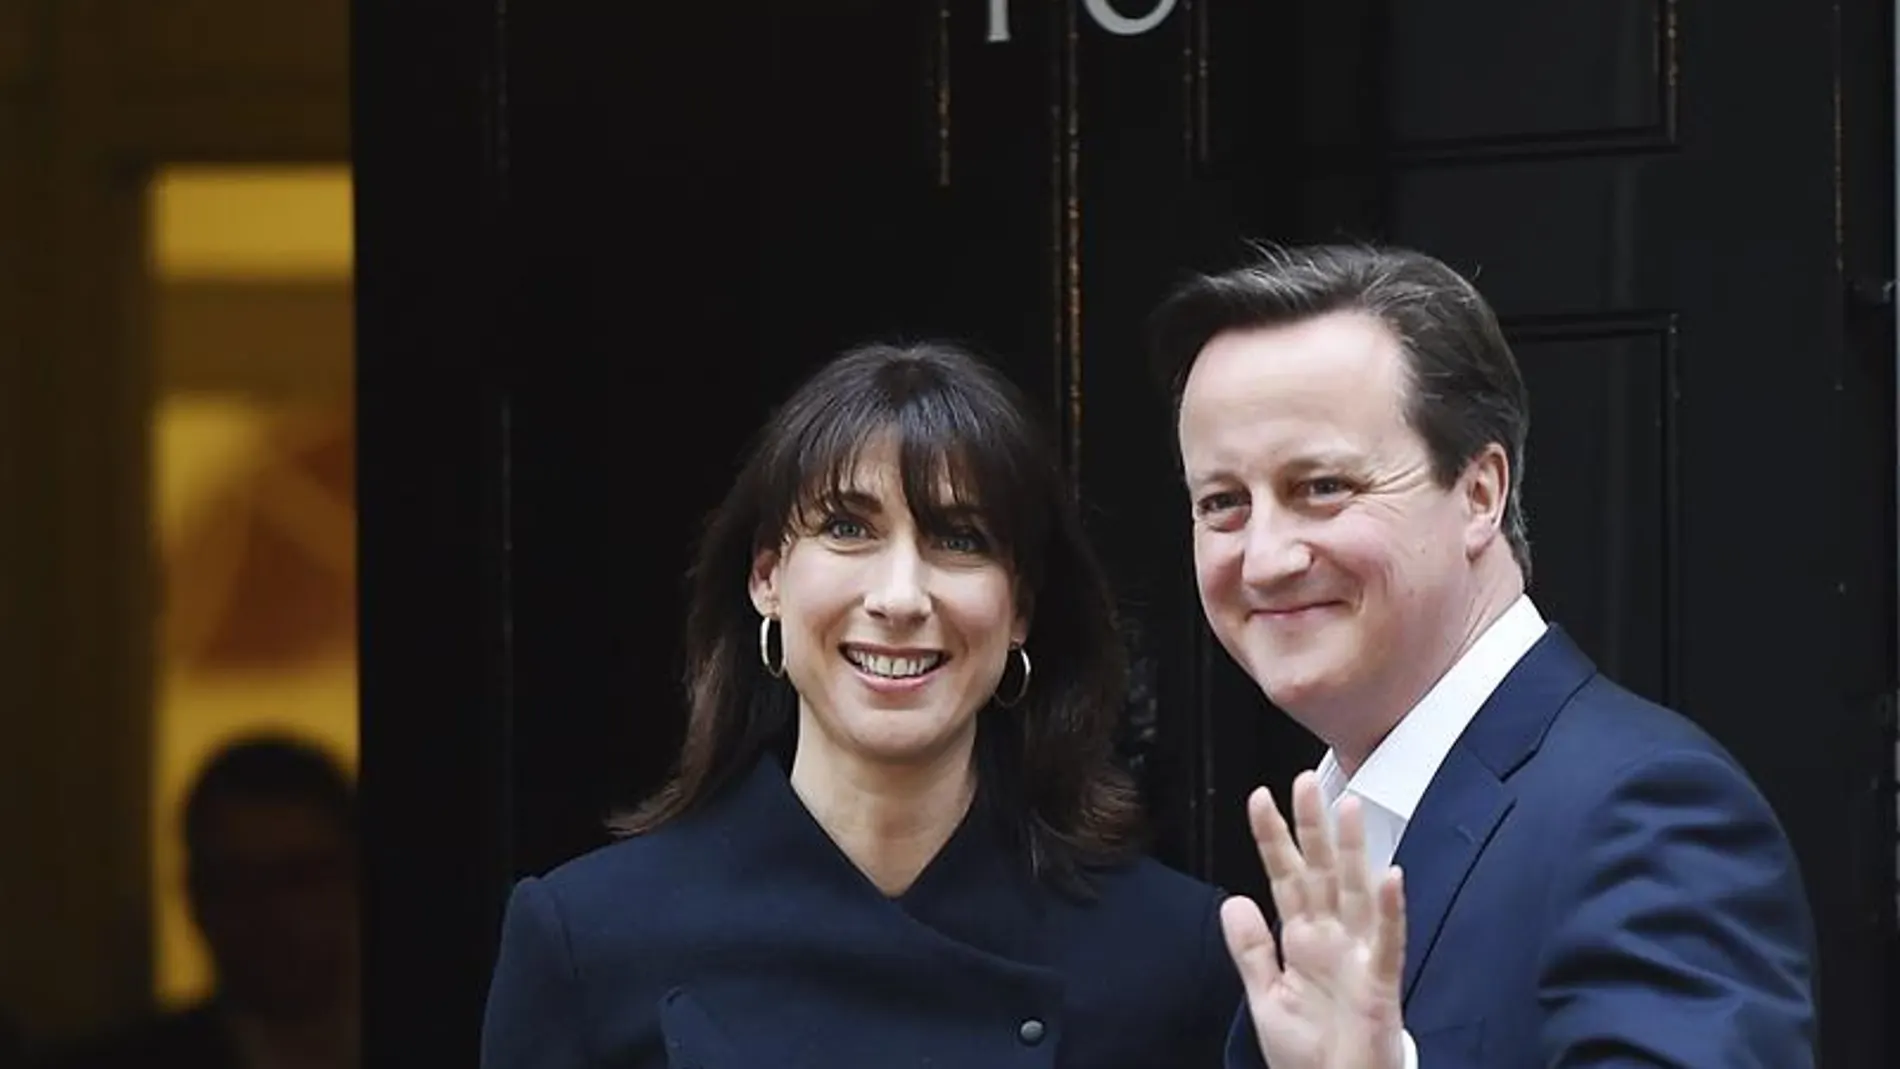 El primer ministro británico, David Cameron, y su mujer